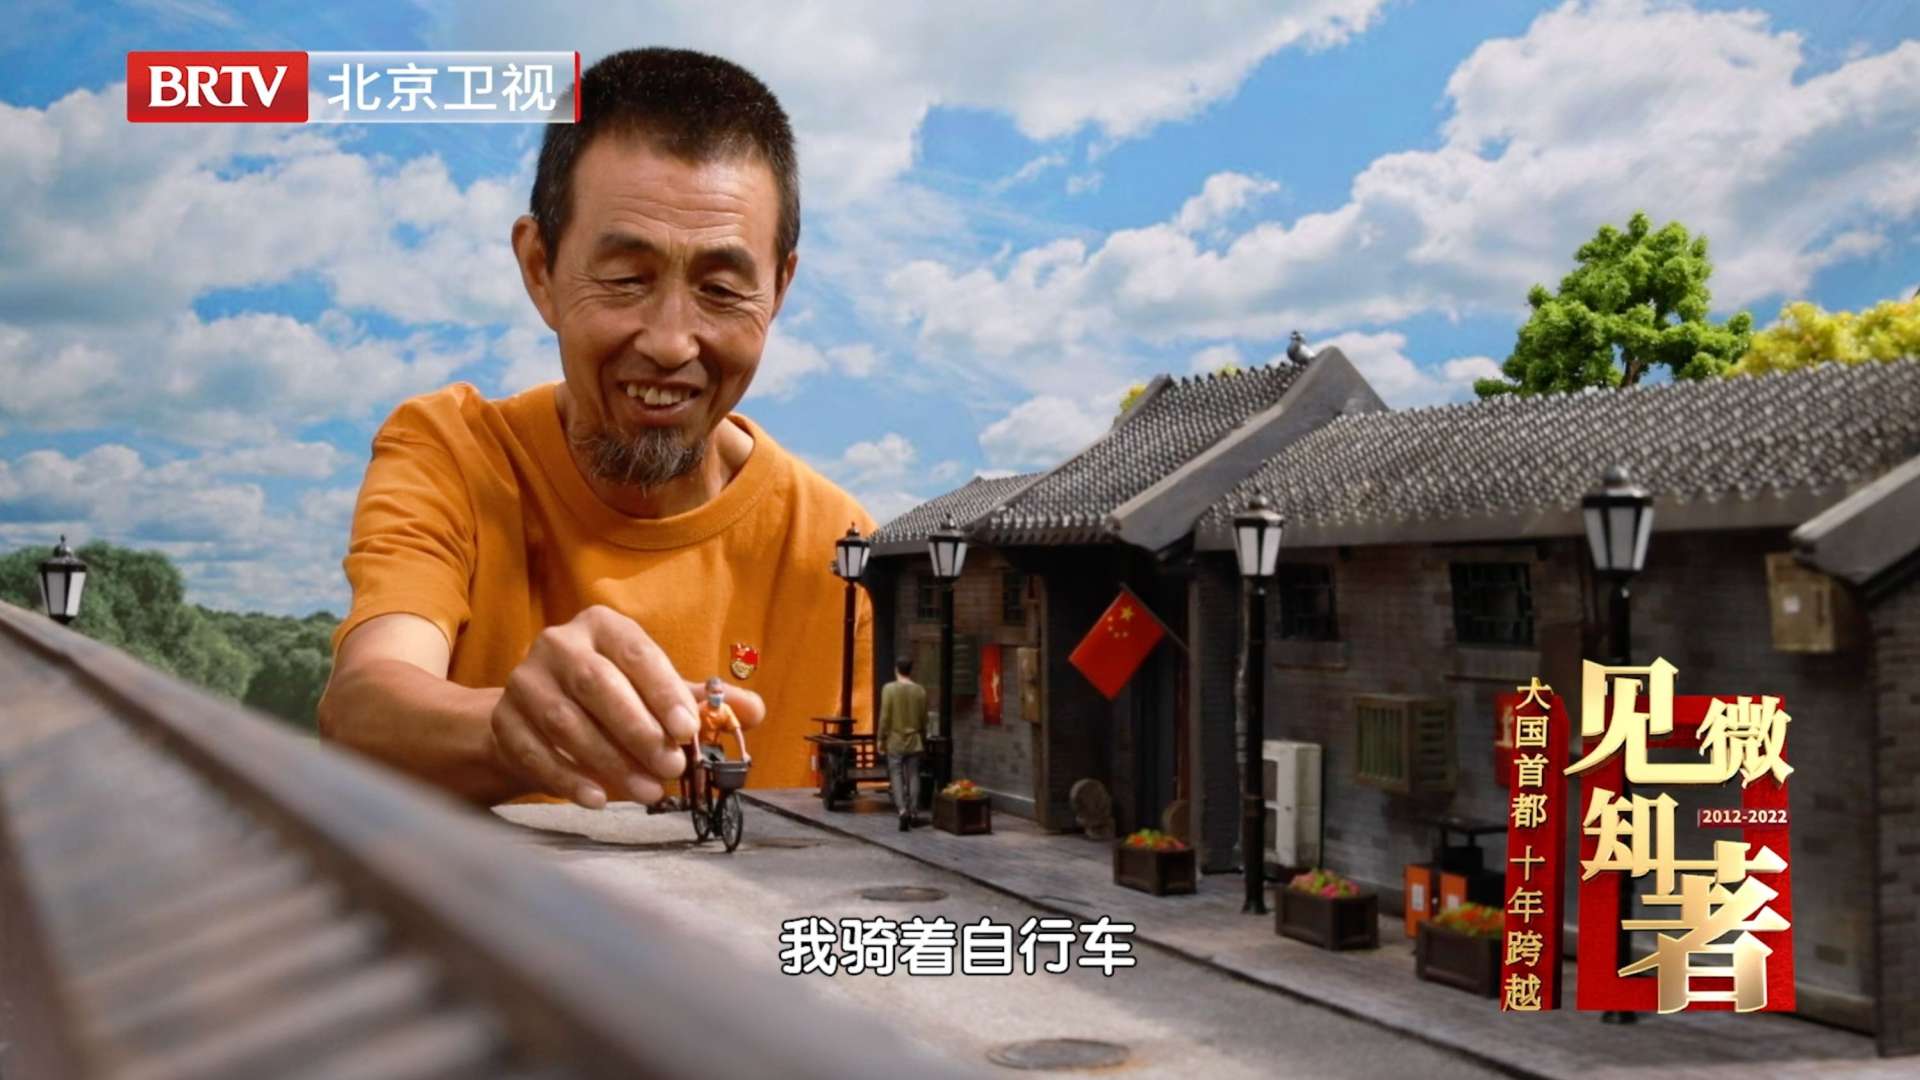 喜迎二十大！北京卫视特别策划《见微知著》 「五集短视频节目」第一集